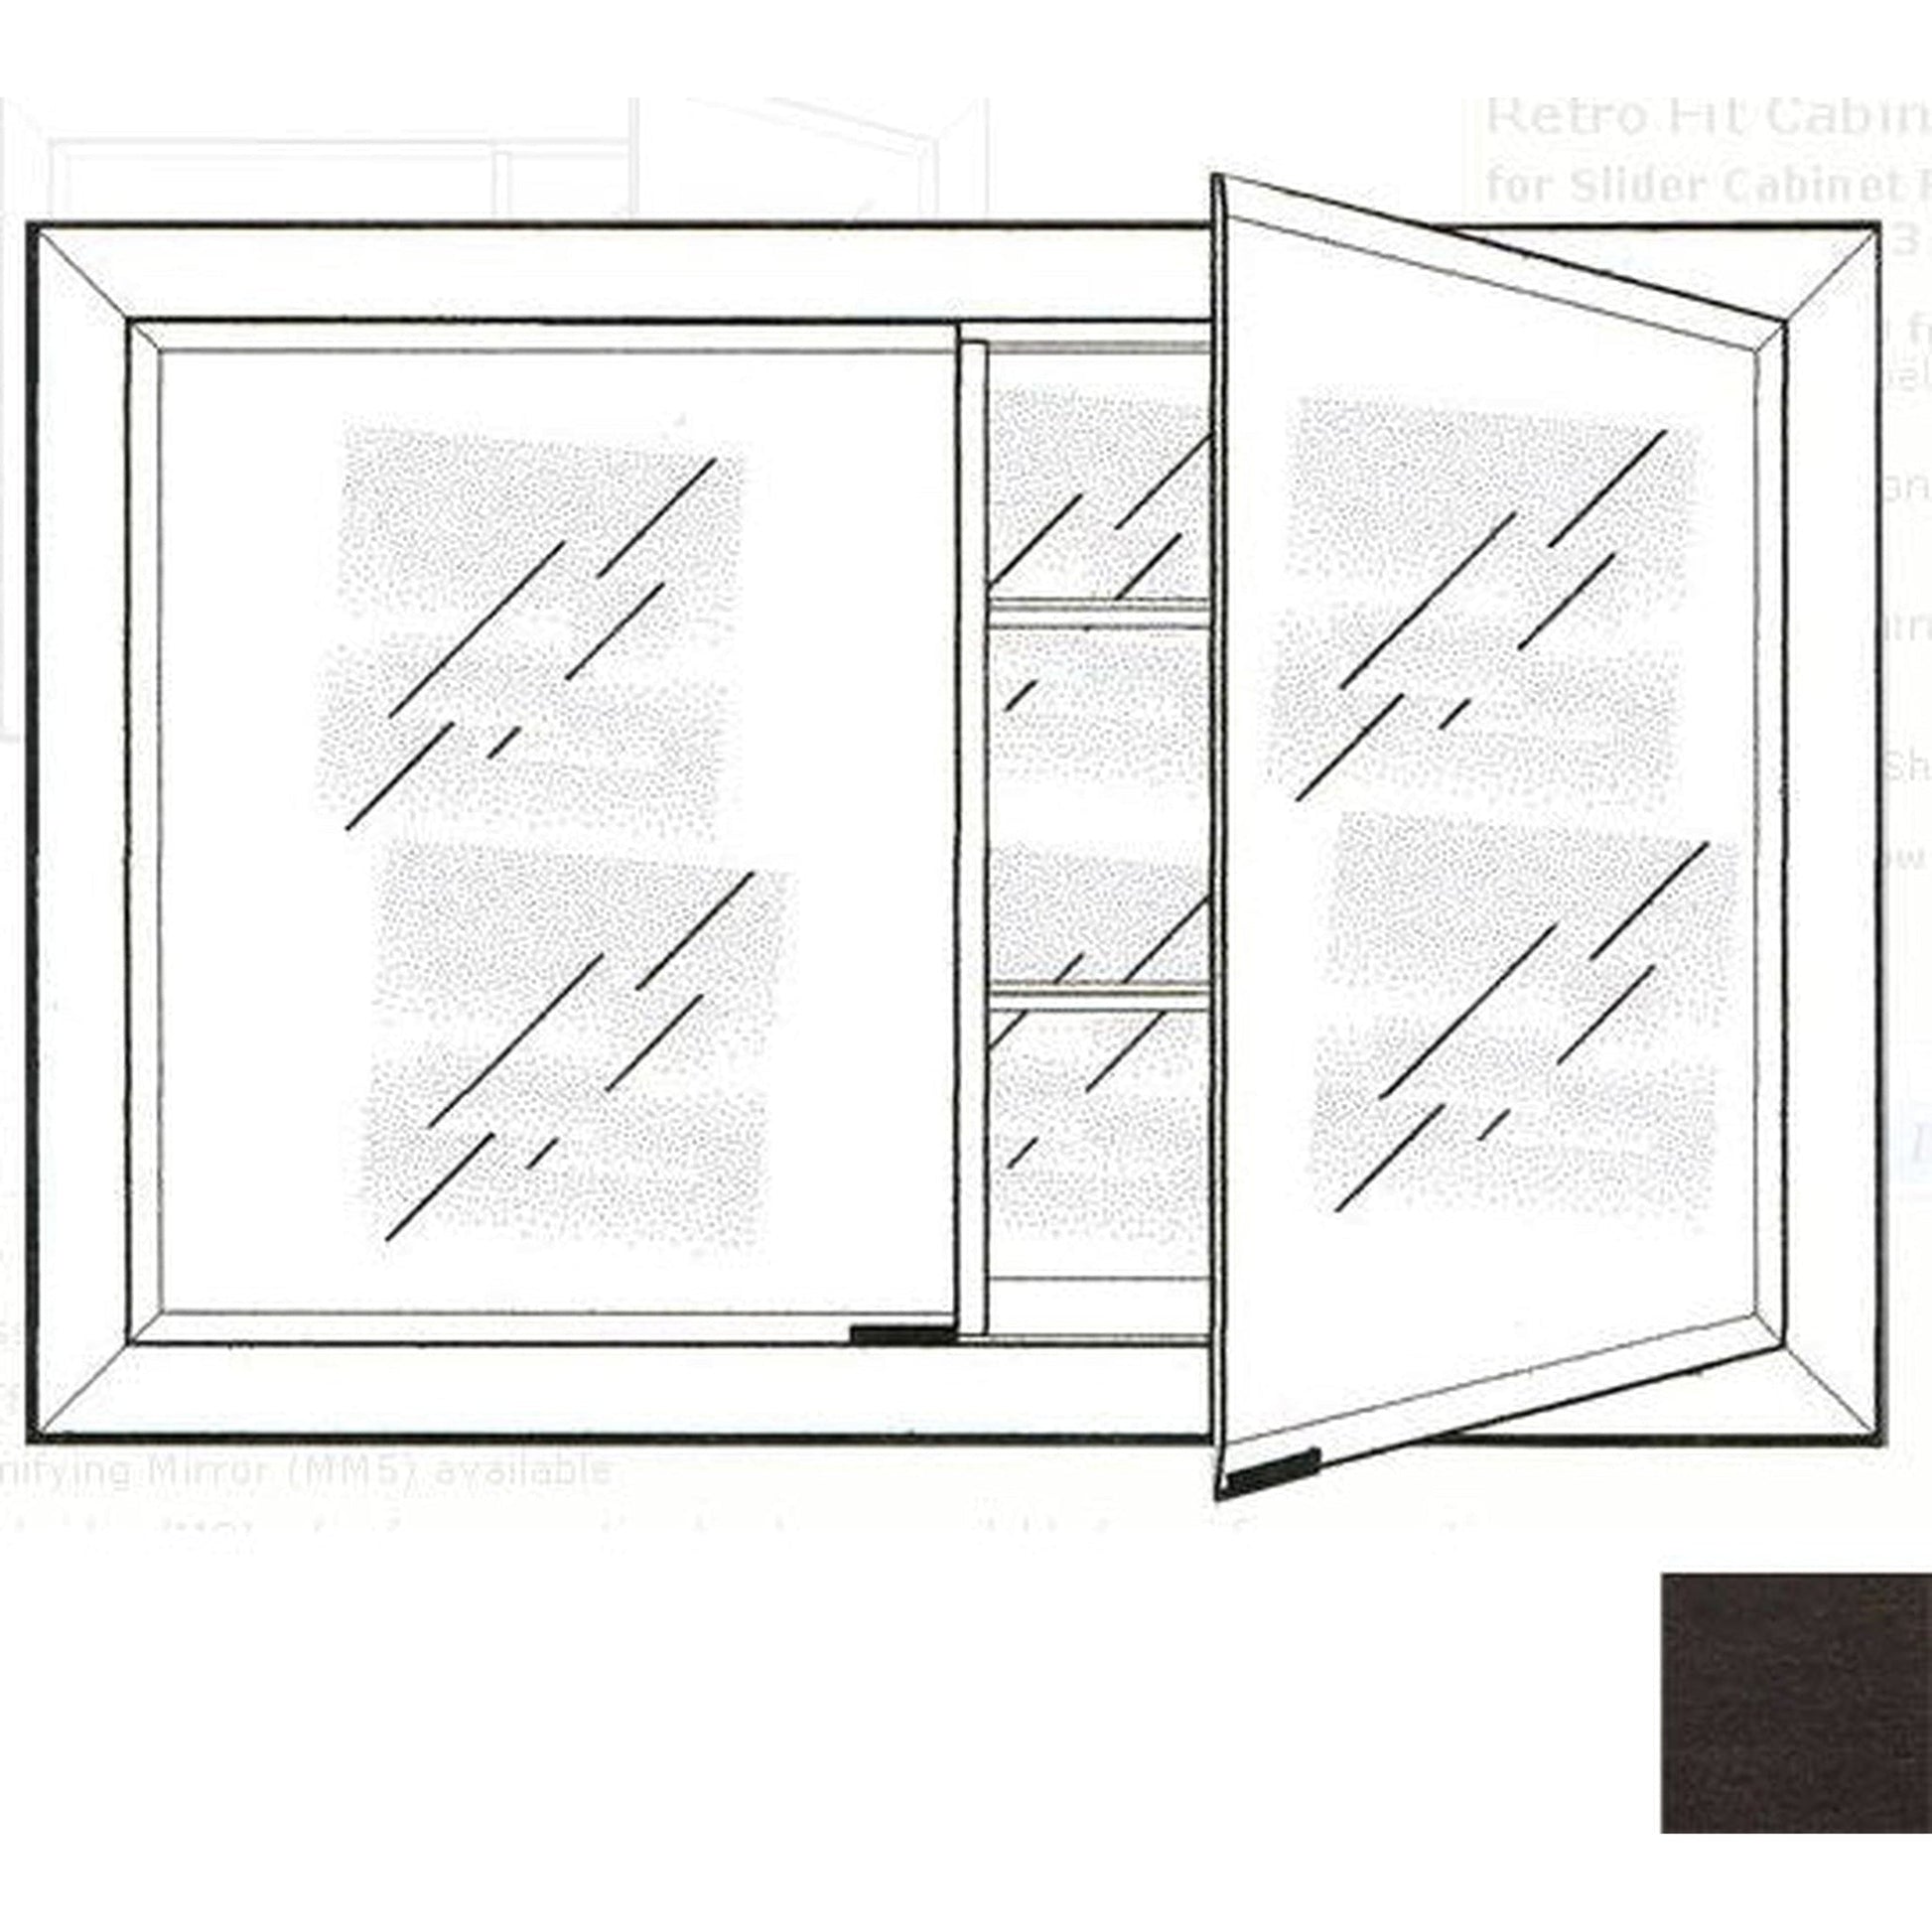 Afina Signature 33" x 23" Tribeca Espresso Recessed Retro-Fit Double Door Medicine Cabinet With Beveled Edge Mirror